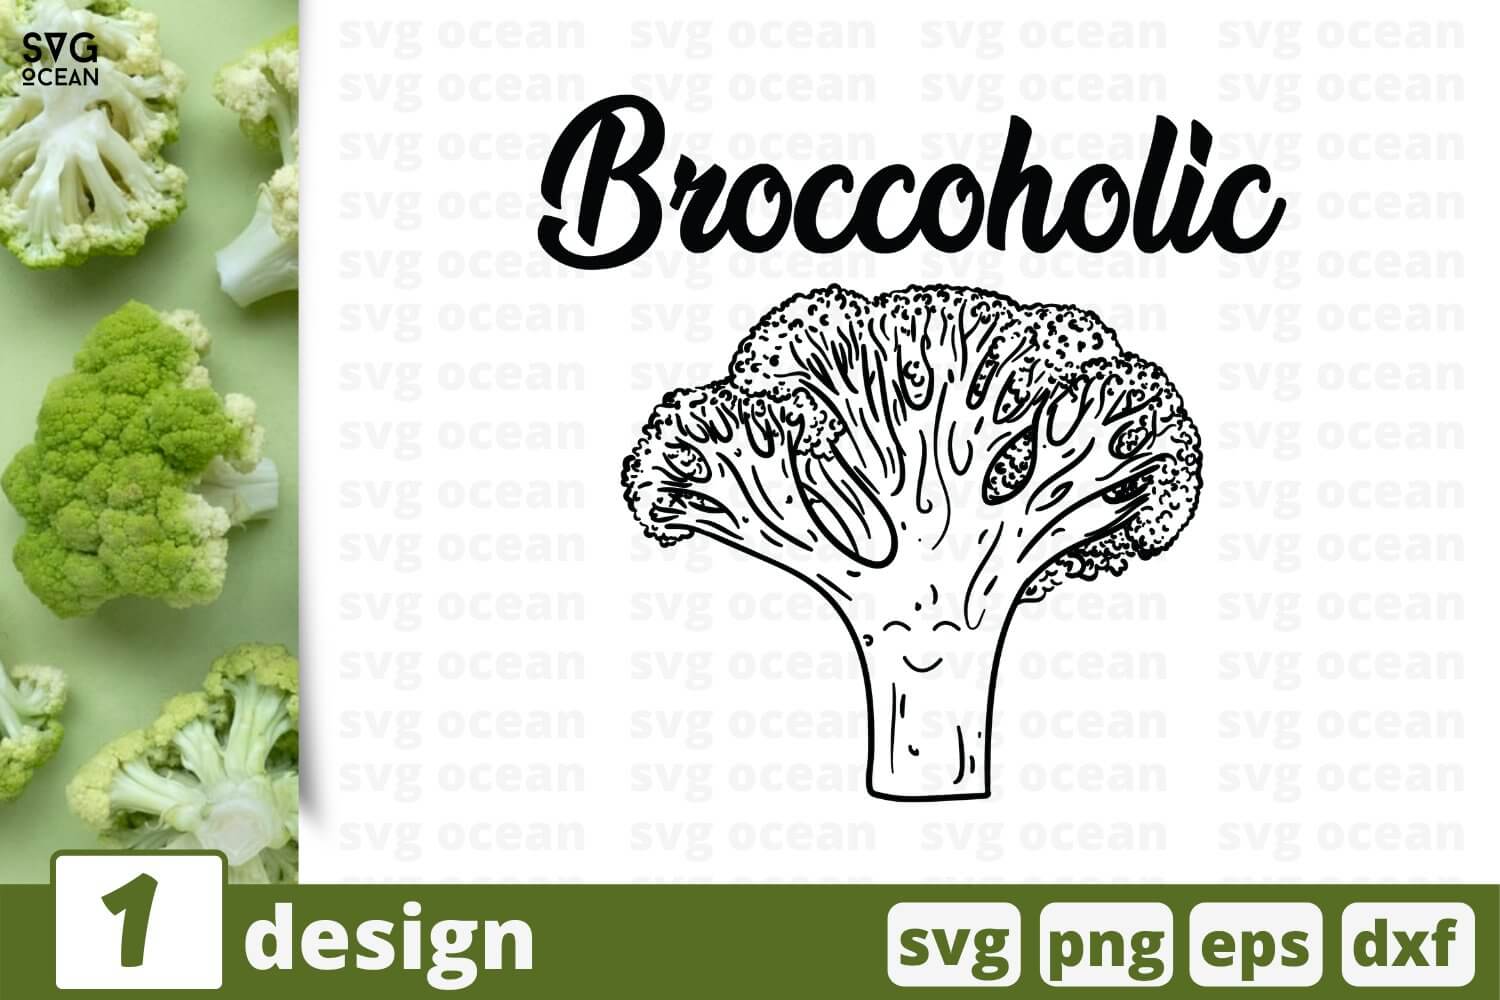 Black and white broccoli design.